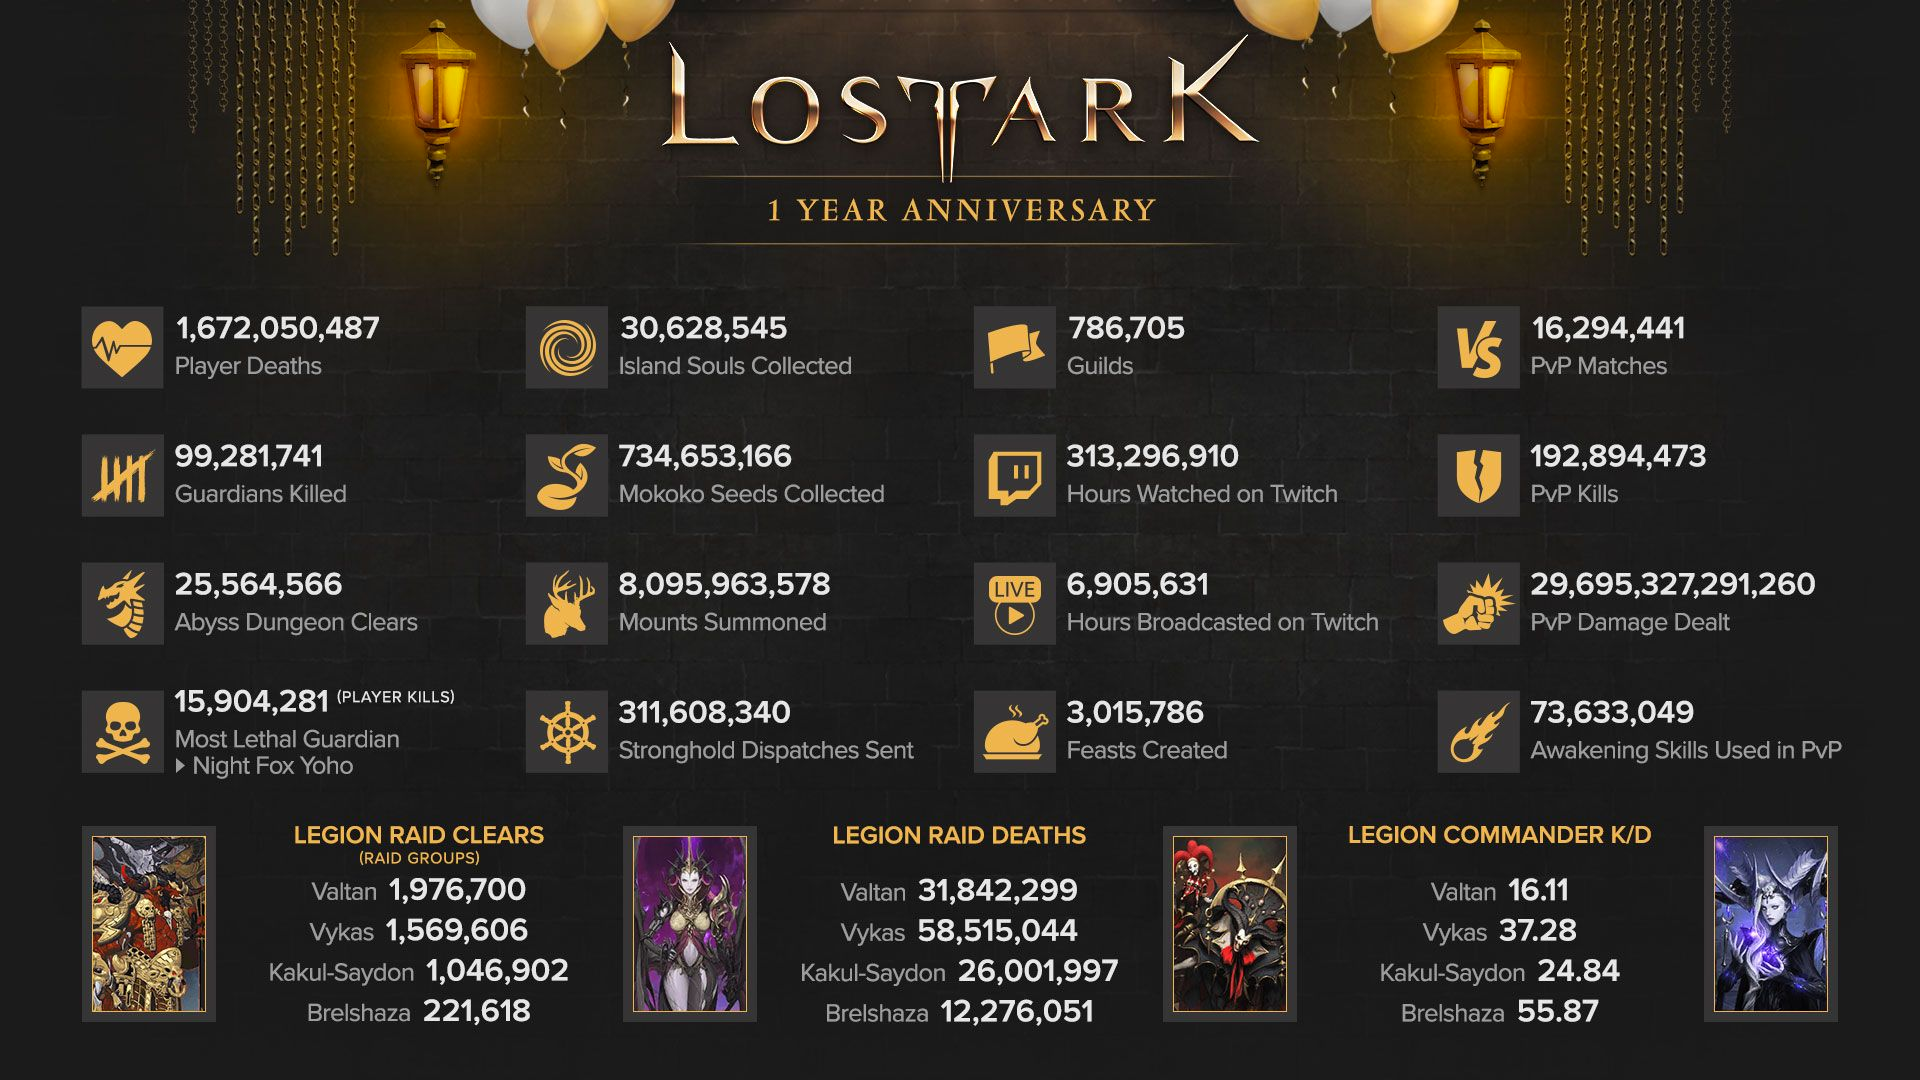 Pemain Lost Ark telah meninggal sebanyak 1.672.050.487 kali sejauh ini